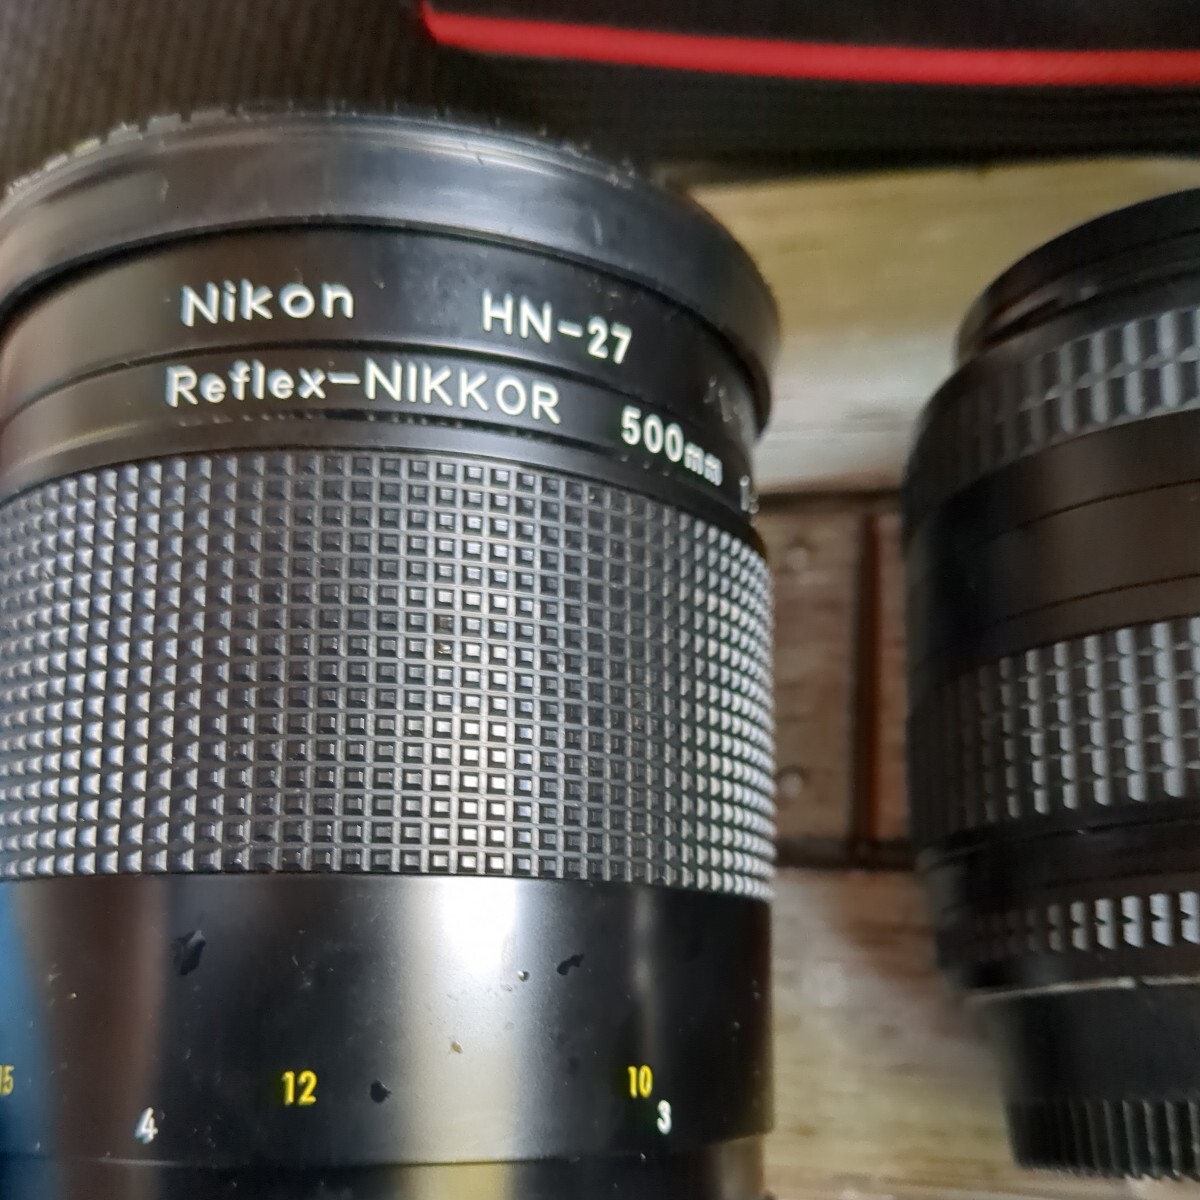 Nikon ニコン カメラ FM2 NIKON ニコンReflex-NIKKOR 500mm 1:8ミラーレンズ HN-27 AF NIKKOR 28-70mm NIKKOR 200mm オールドレンズの画像3